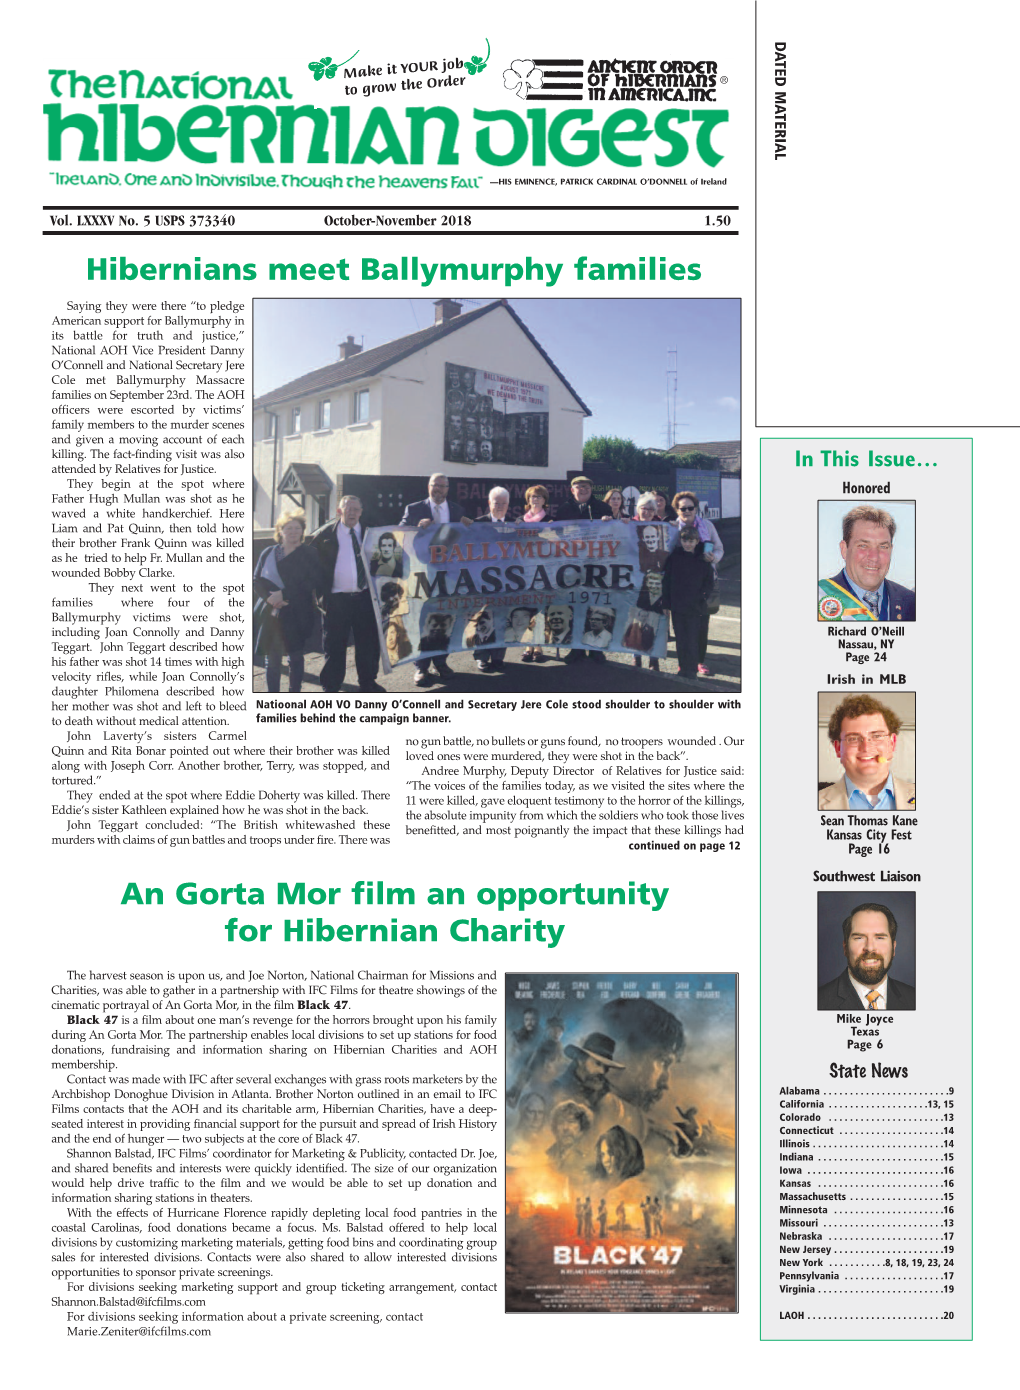 Hibernians Meet Ballymurphy Families an Gorta Mor Film an Opportunity for Hibernian Charity